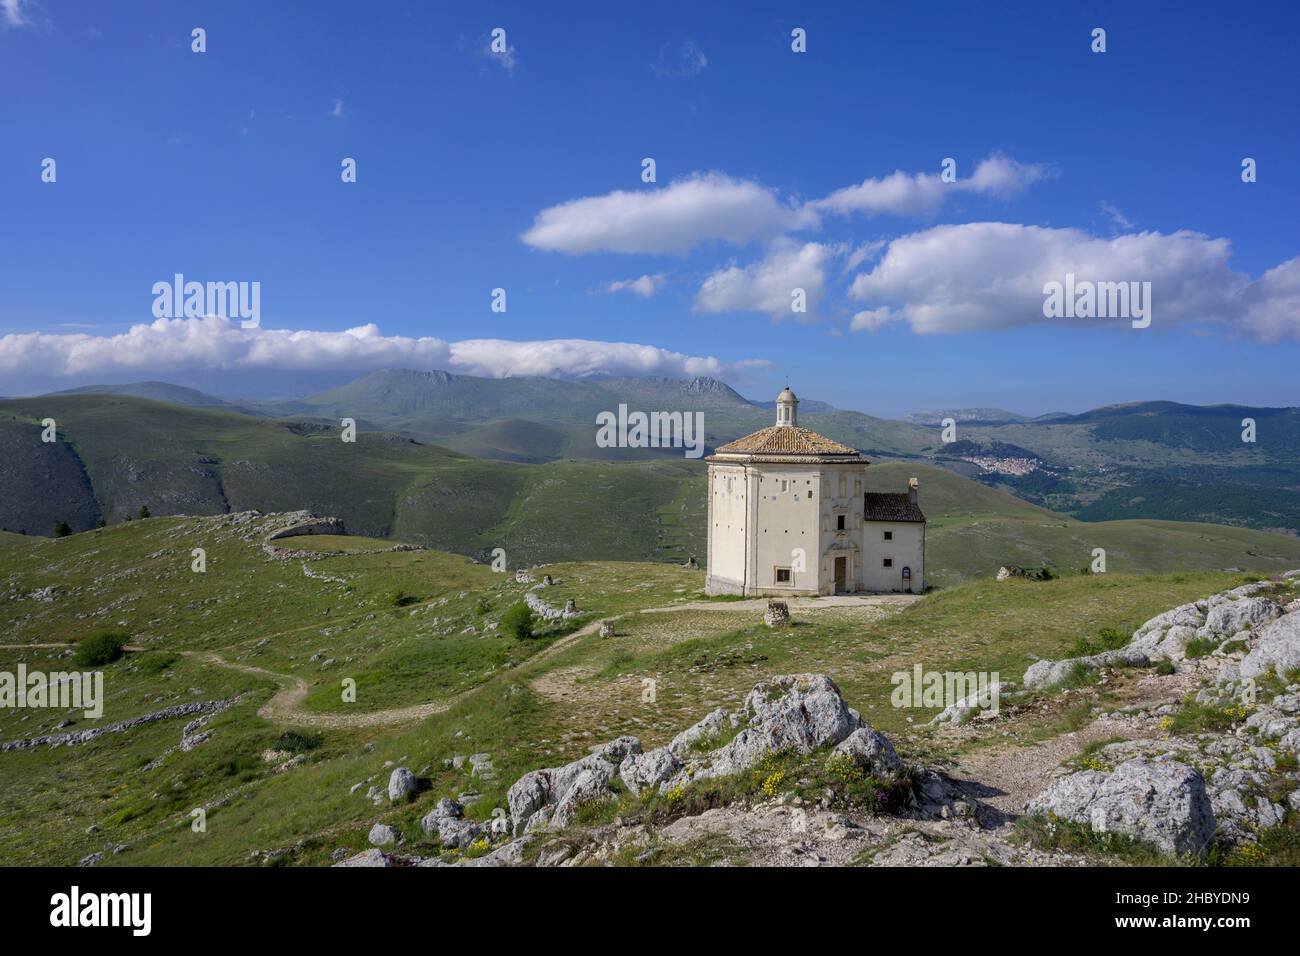 Church of Santa Maria della Pieta, Calascio, Province of L'Aquila, Italy Stock Photo